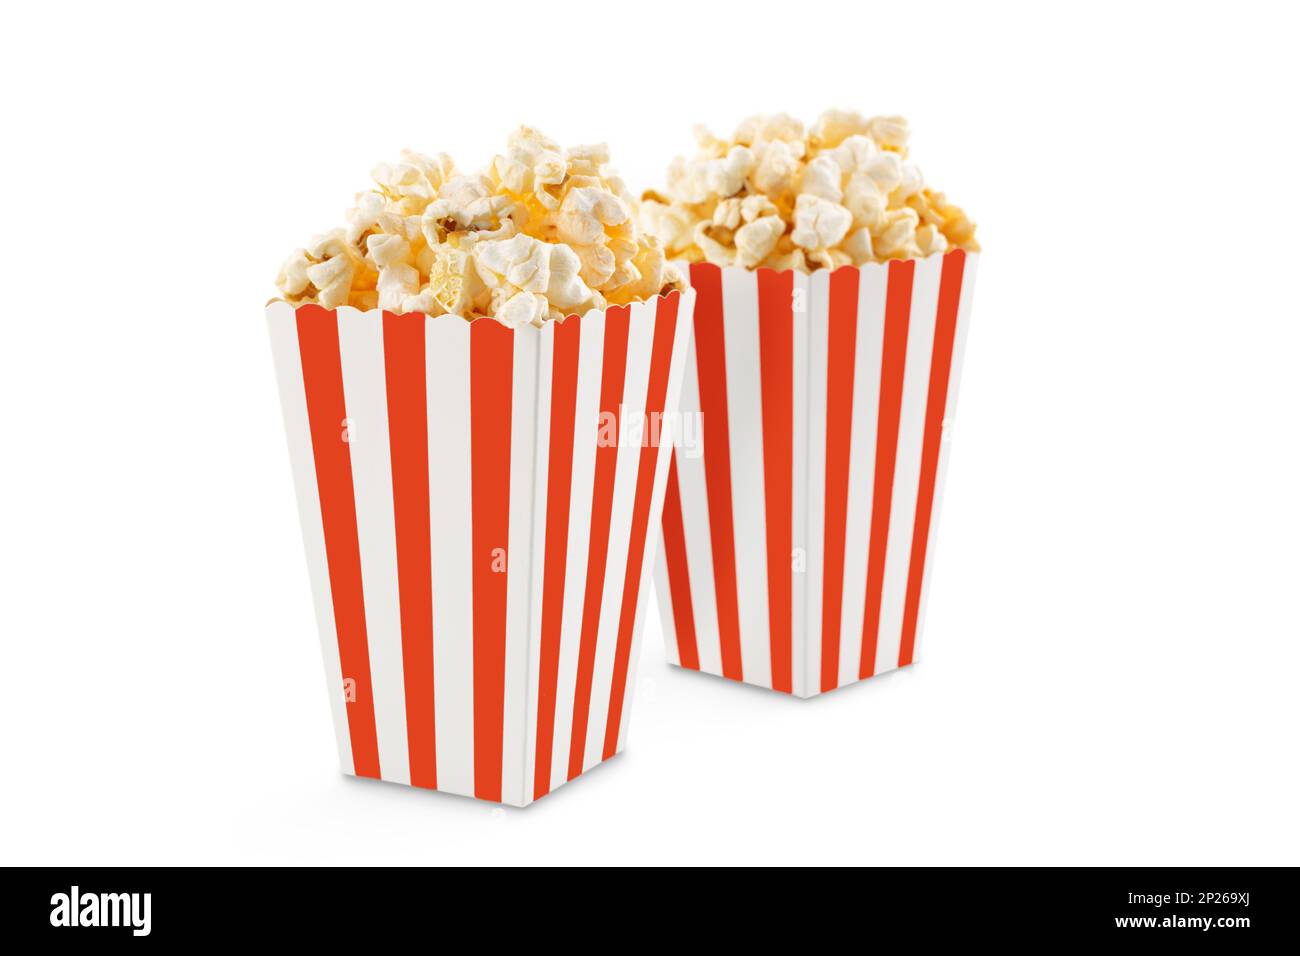 Due secchi in cartone a strisce bianche rosse con gustosi popcorn al formaggio, isolati su sfondo bianco. Concetto di film, cinema e intrattenimento. Foto Stock